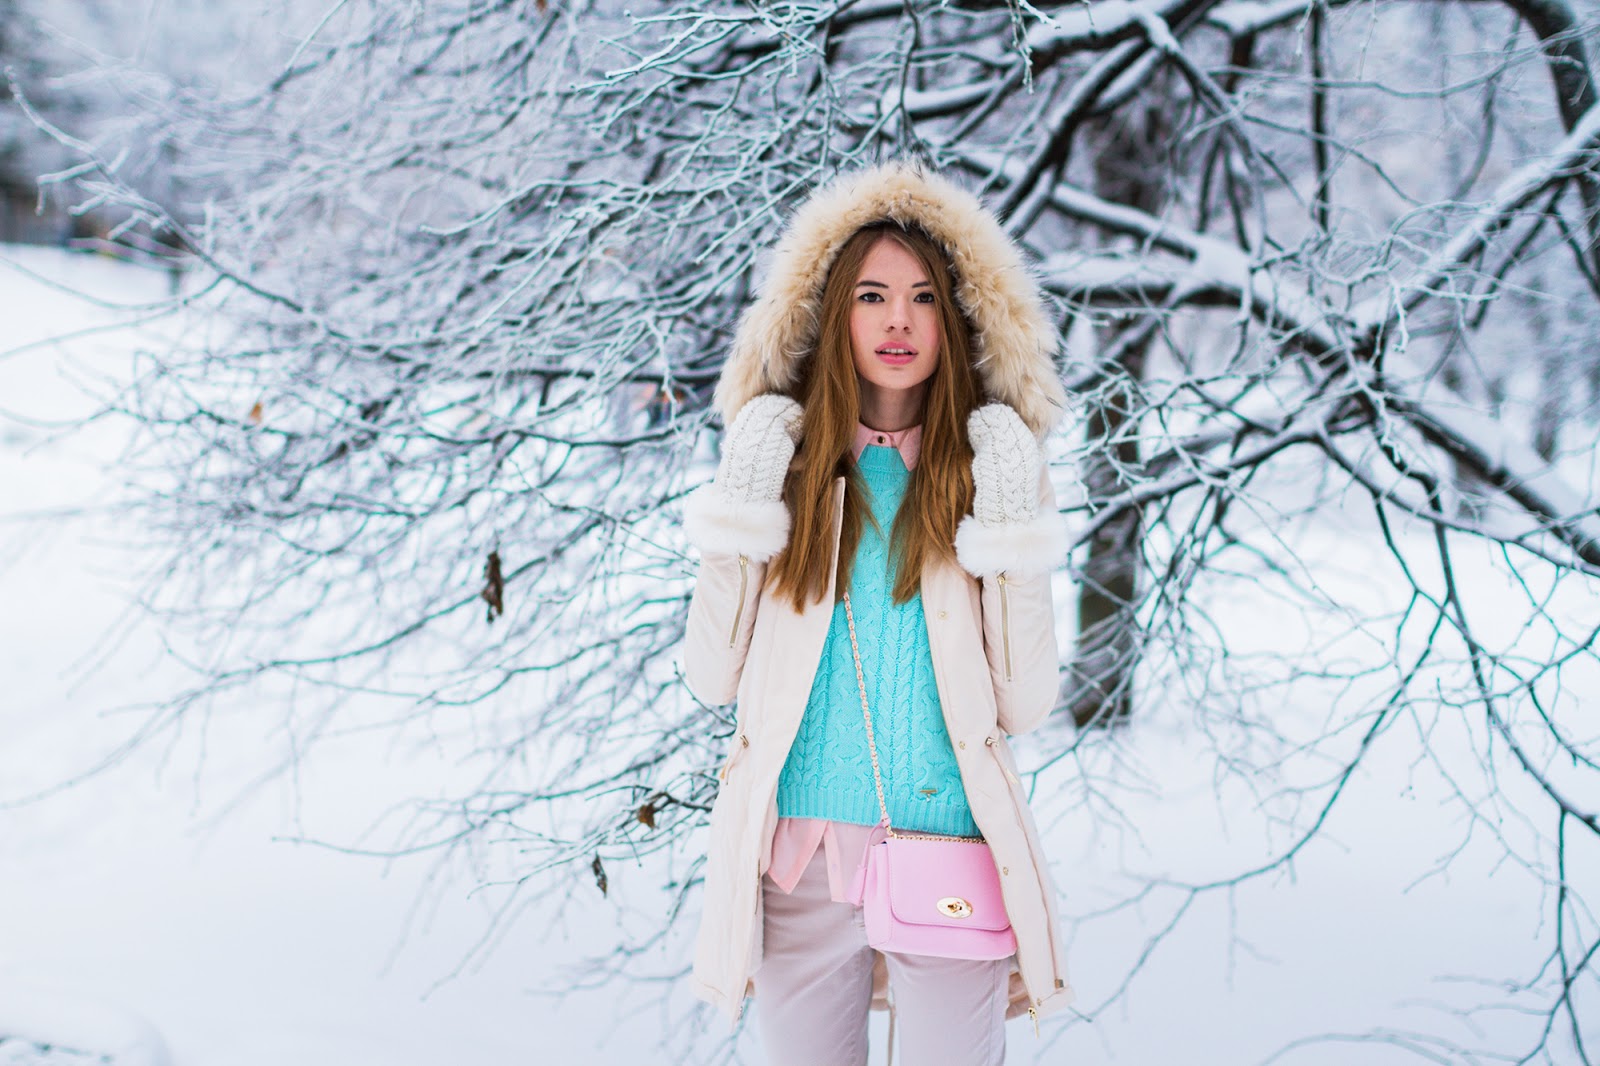 Теплая одежда зима. Девушка в зимней одежде. Зимние образы. Красивые девушки в зимней одежде. Зимний наряд для девушки.